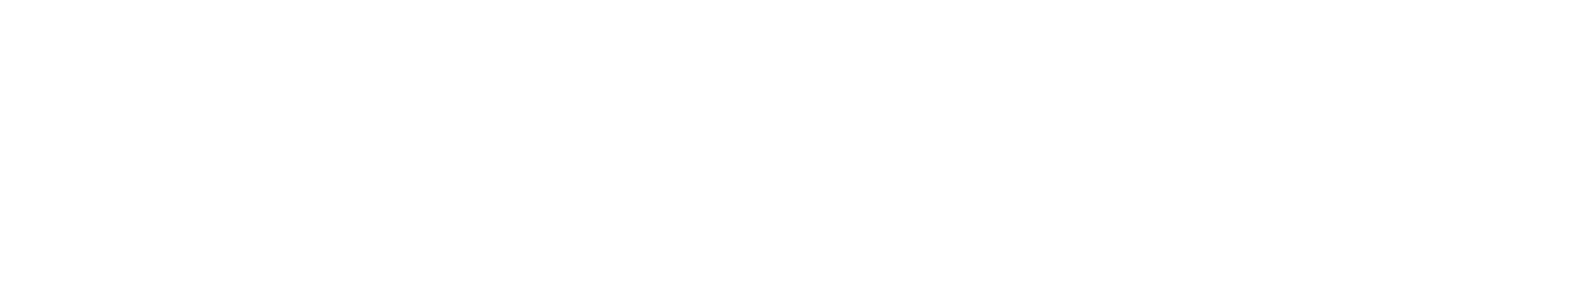 Trupanion
 logo large for dark backgrounds (transparent PNG)